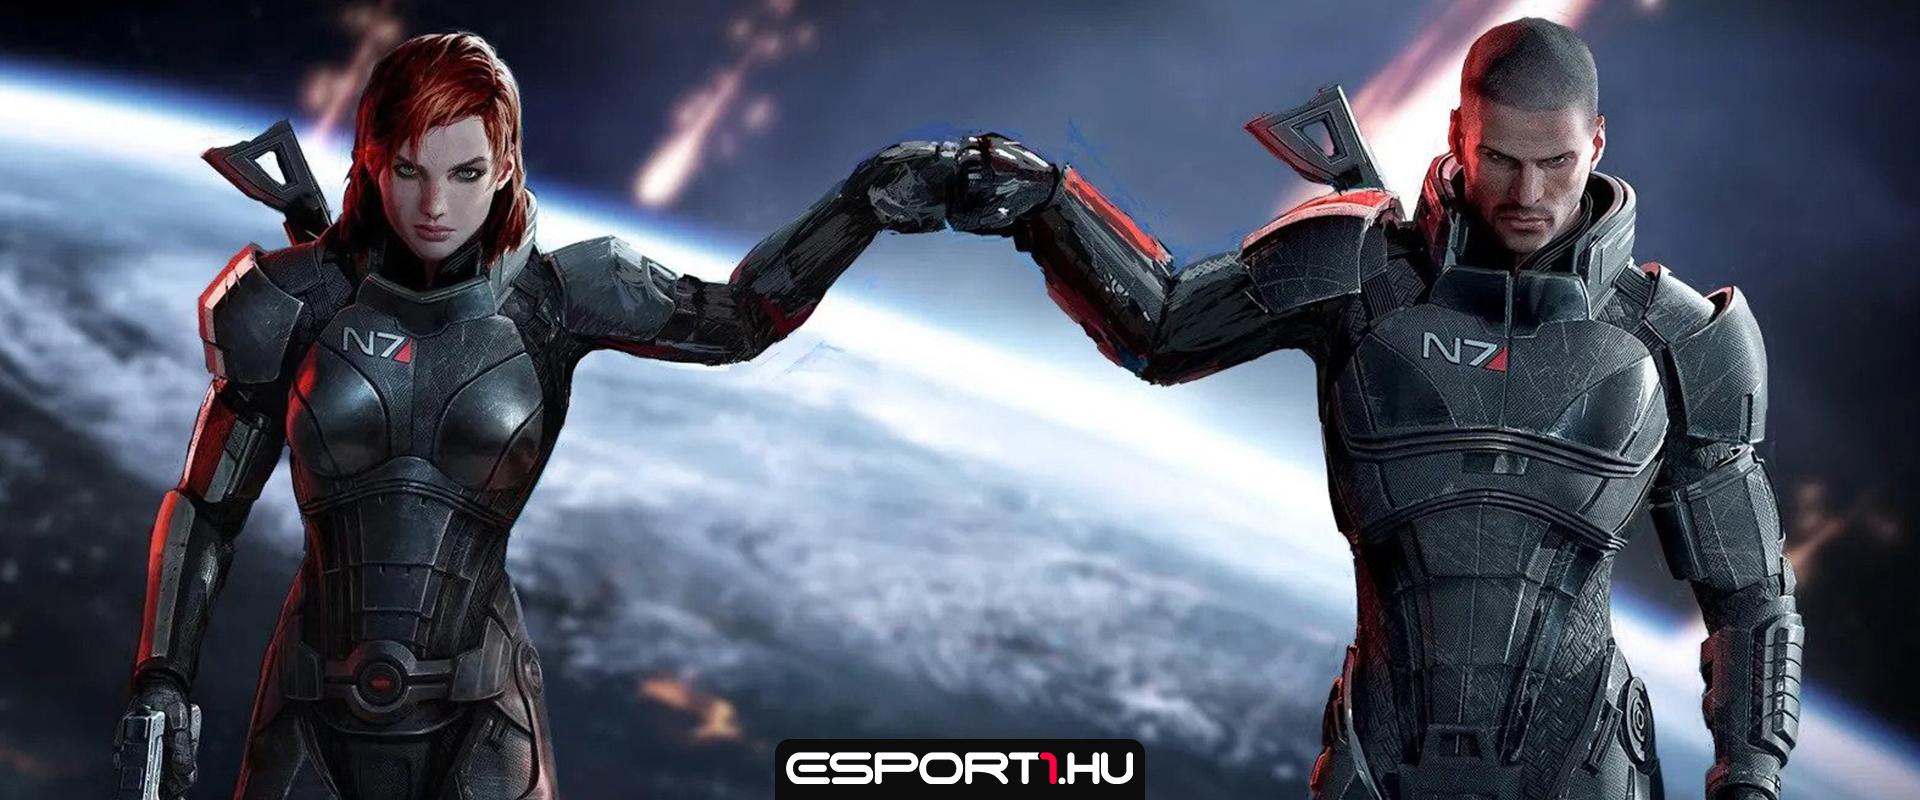 Megerősítette a BioWare, a Deus Ex korábbi írója is az új Mass Effecten dolgozik